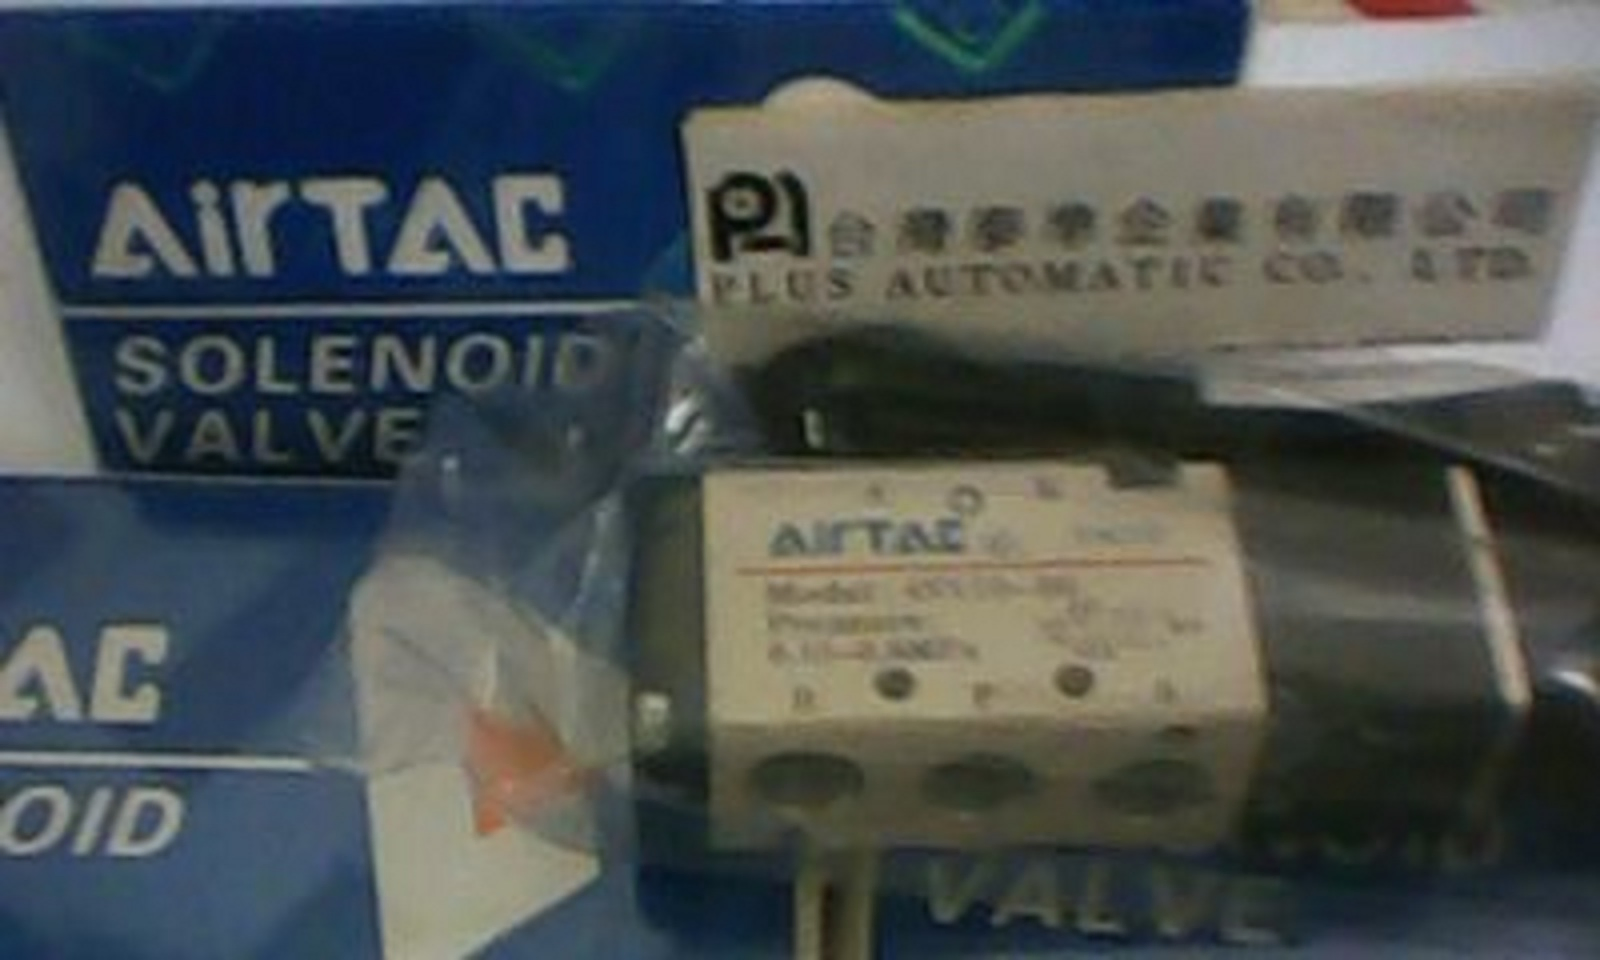 AIRTAC 電磁弁4V110